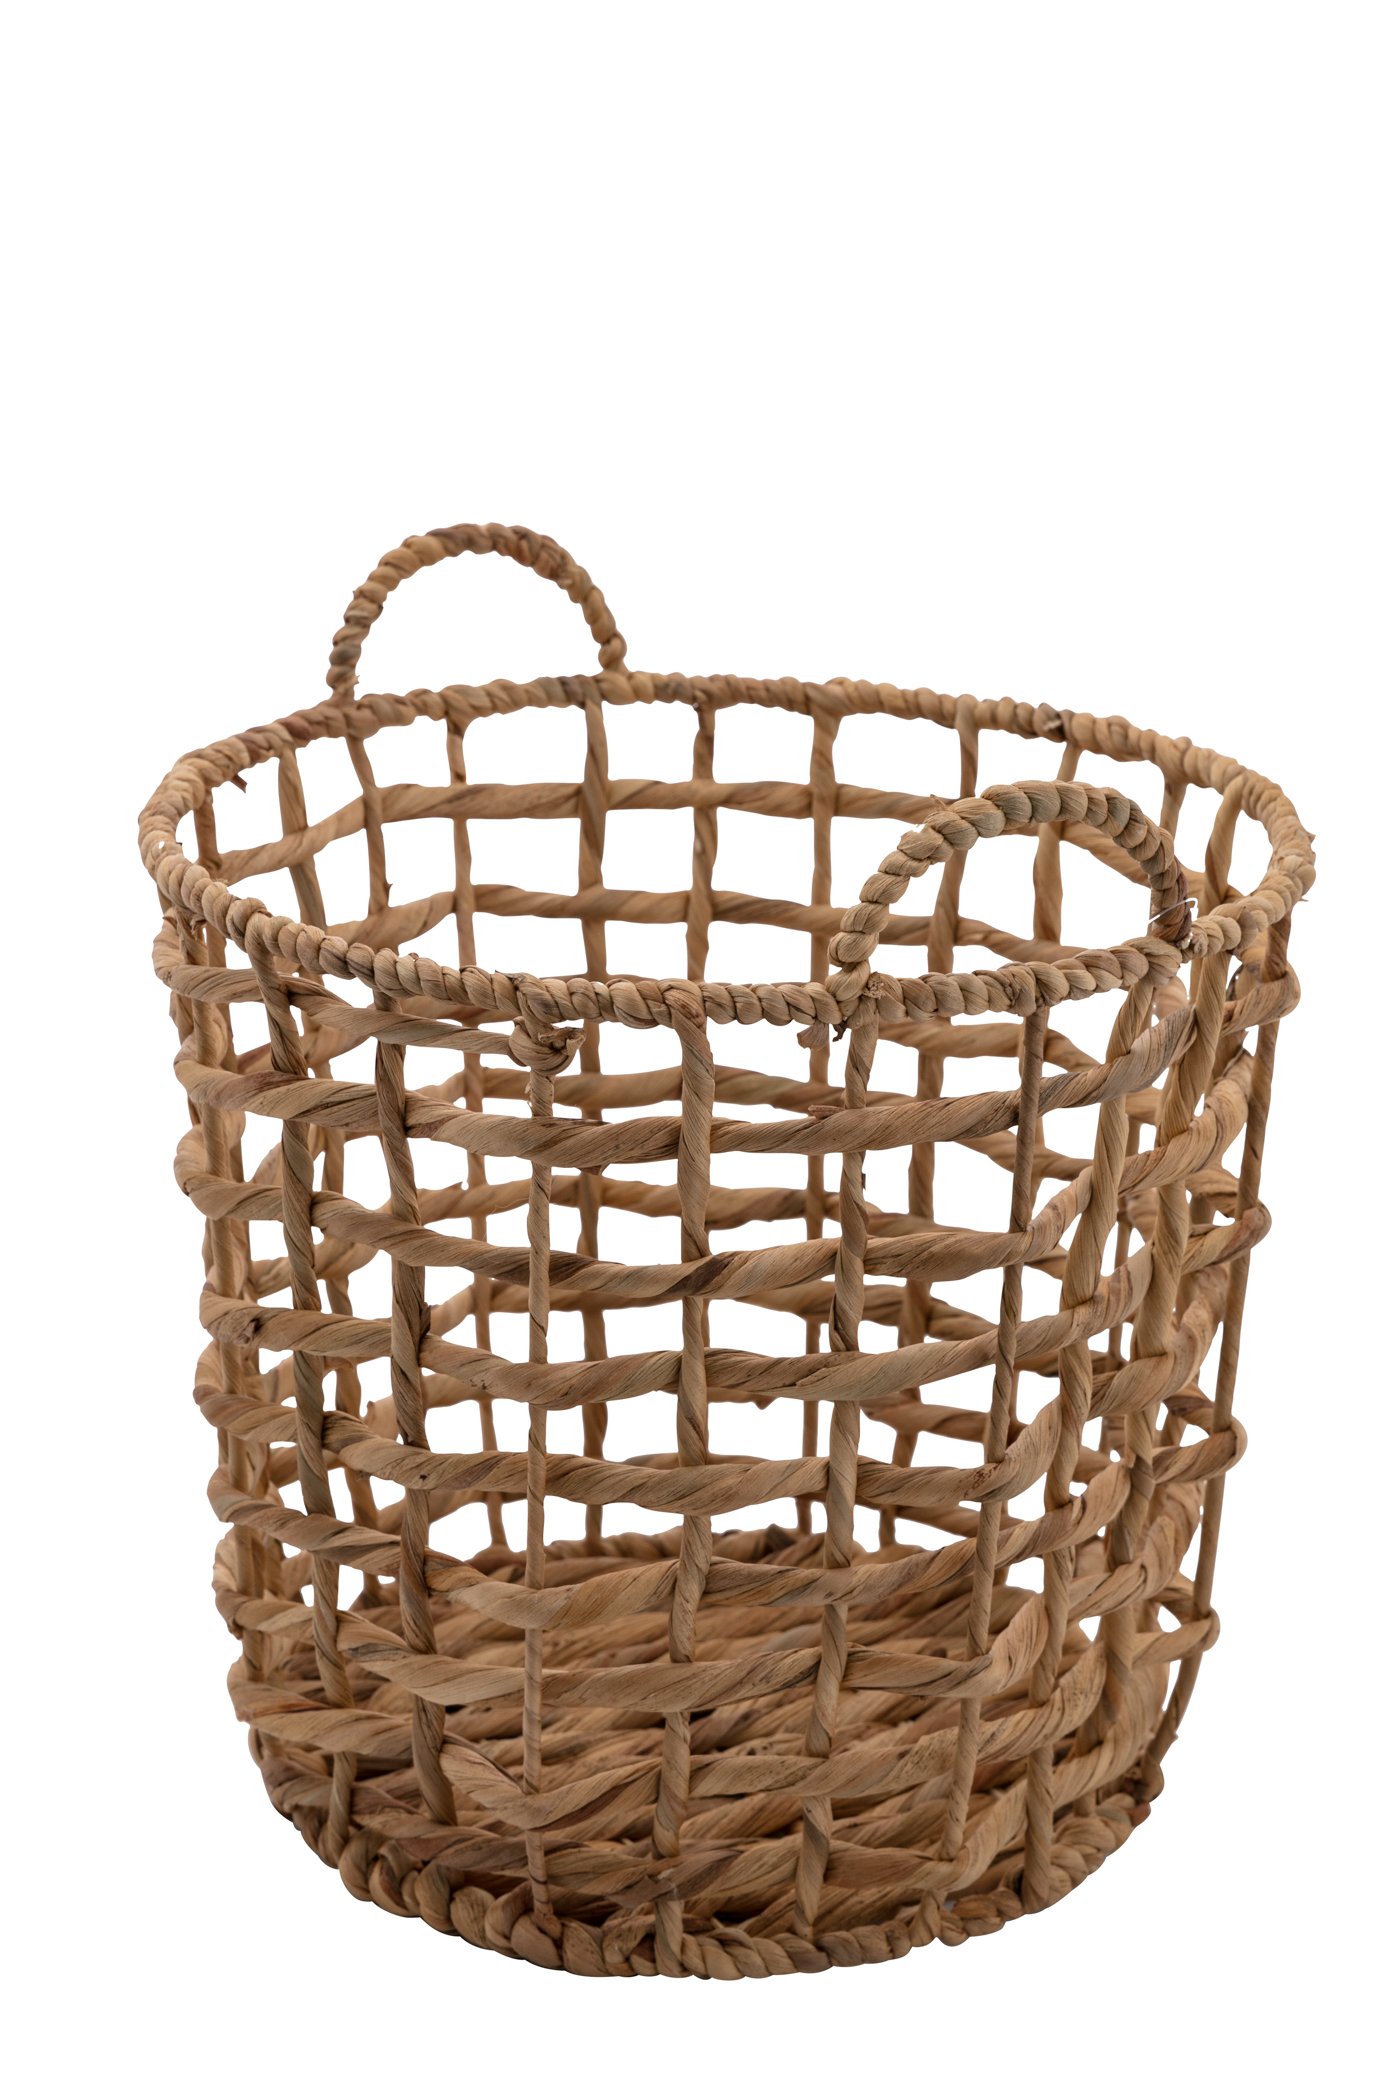 Water-hyacinth basket